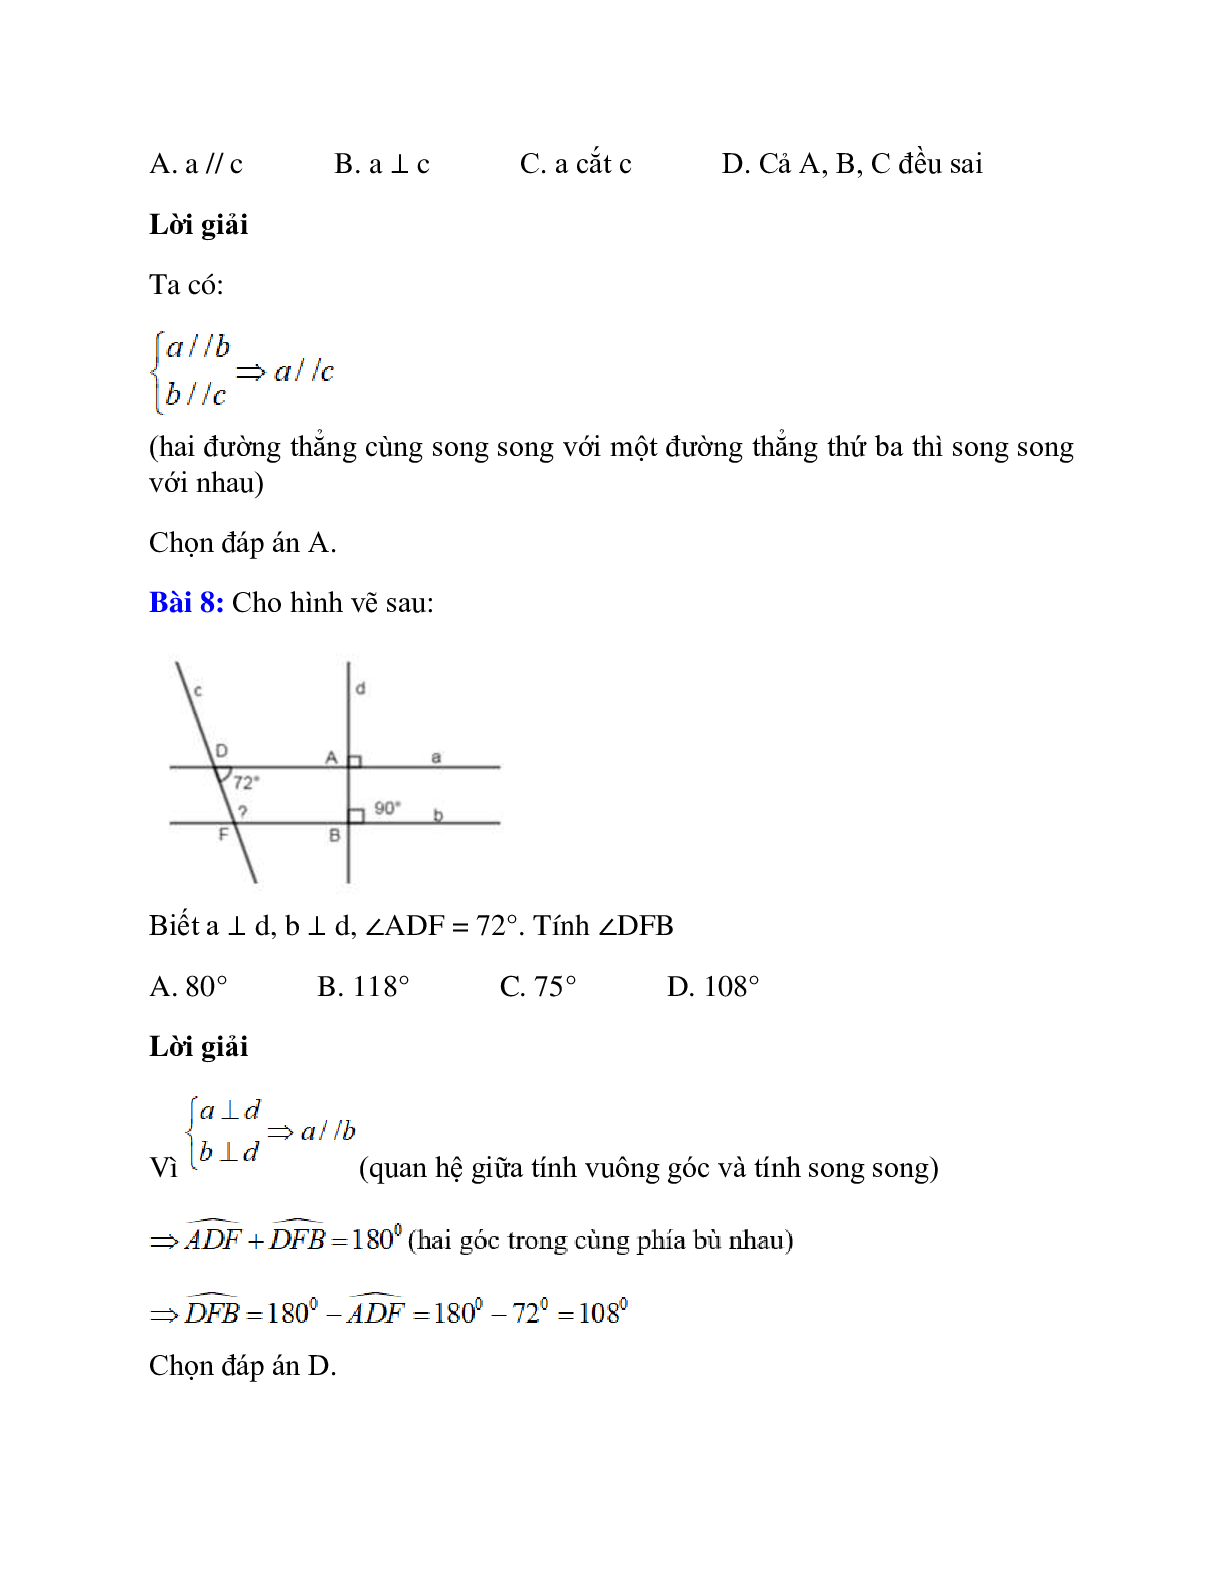 Trắc nghiệm Từ vuông góc đến song song có đáp án – Toán lớp 7 (trang 7)